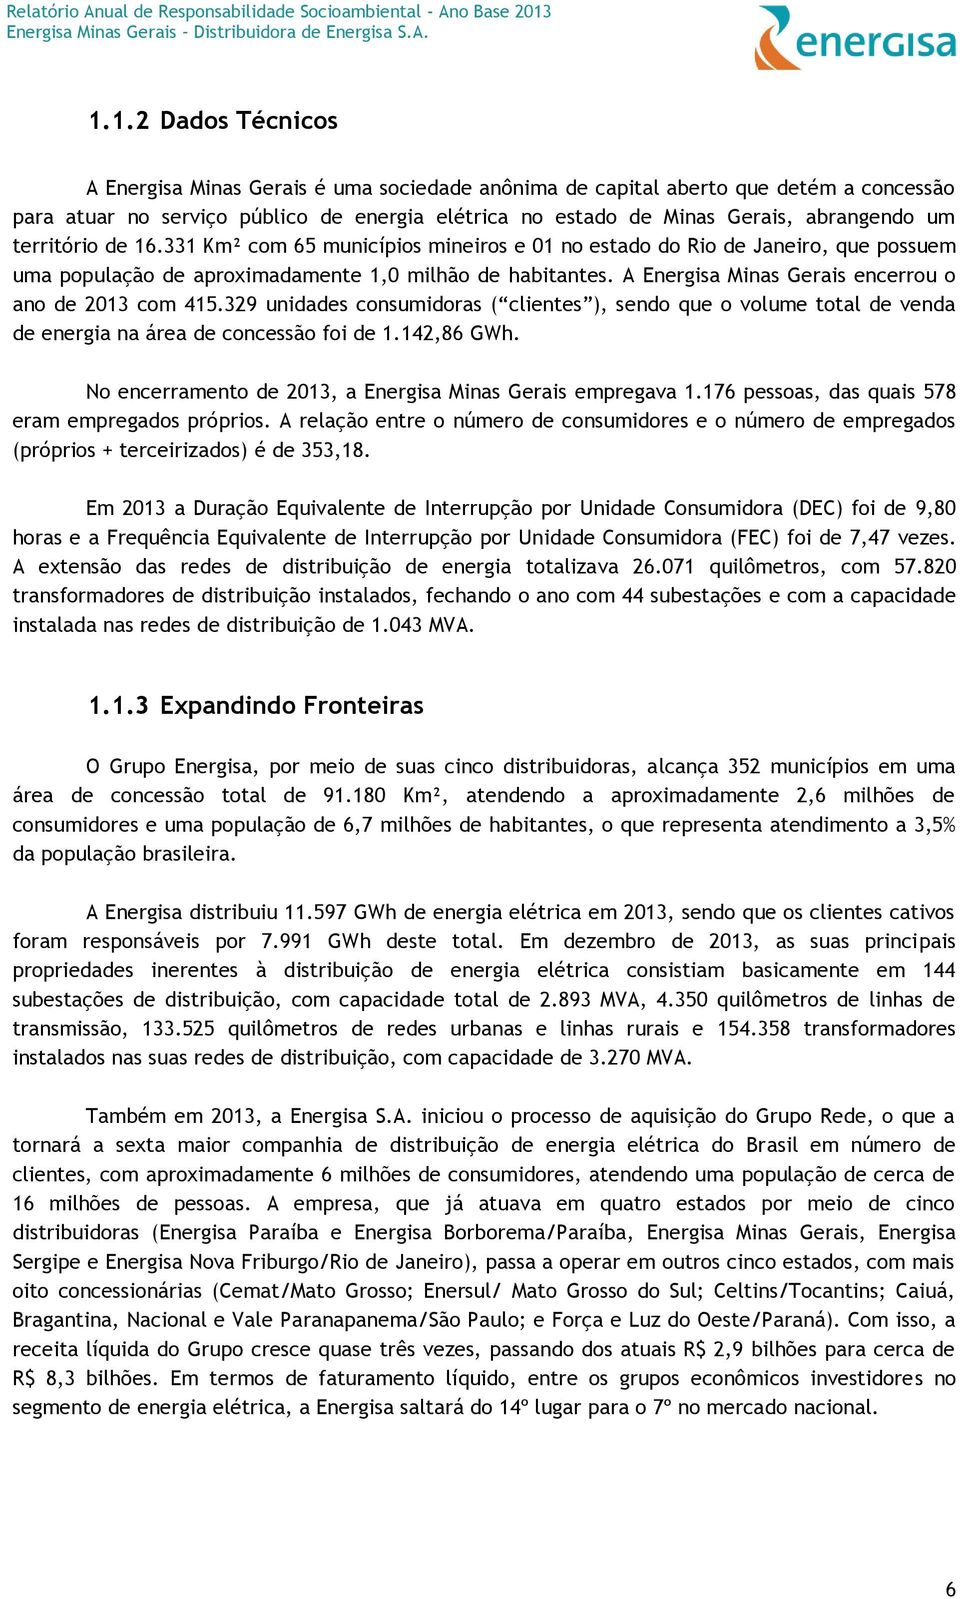 A Energisa Minas Gerais encerrou o ano de 2013 com 415.329 unidades consumidoras ( clientes ), sendo que o volume total de venda de energia na área de concessão foi de 1.142,86 GWh.